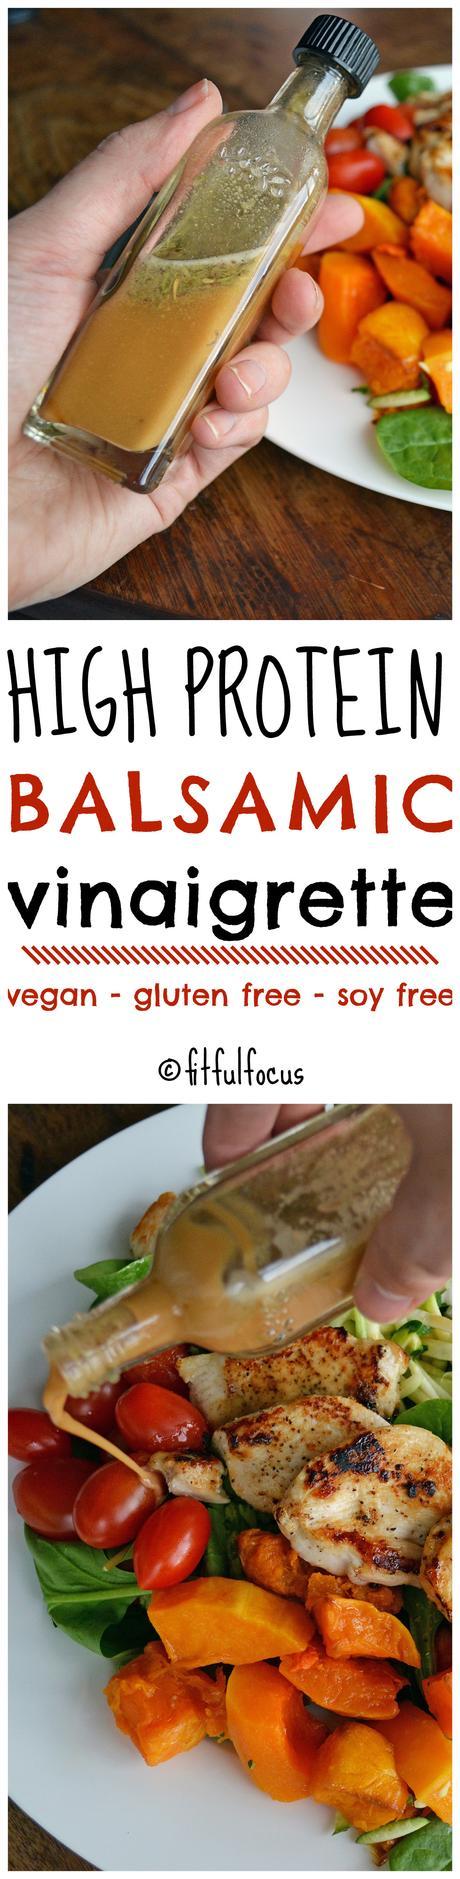 High Protein Balsamic Vinaigrette (vegan, gluten free, soy free)